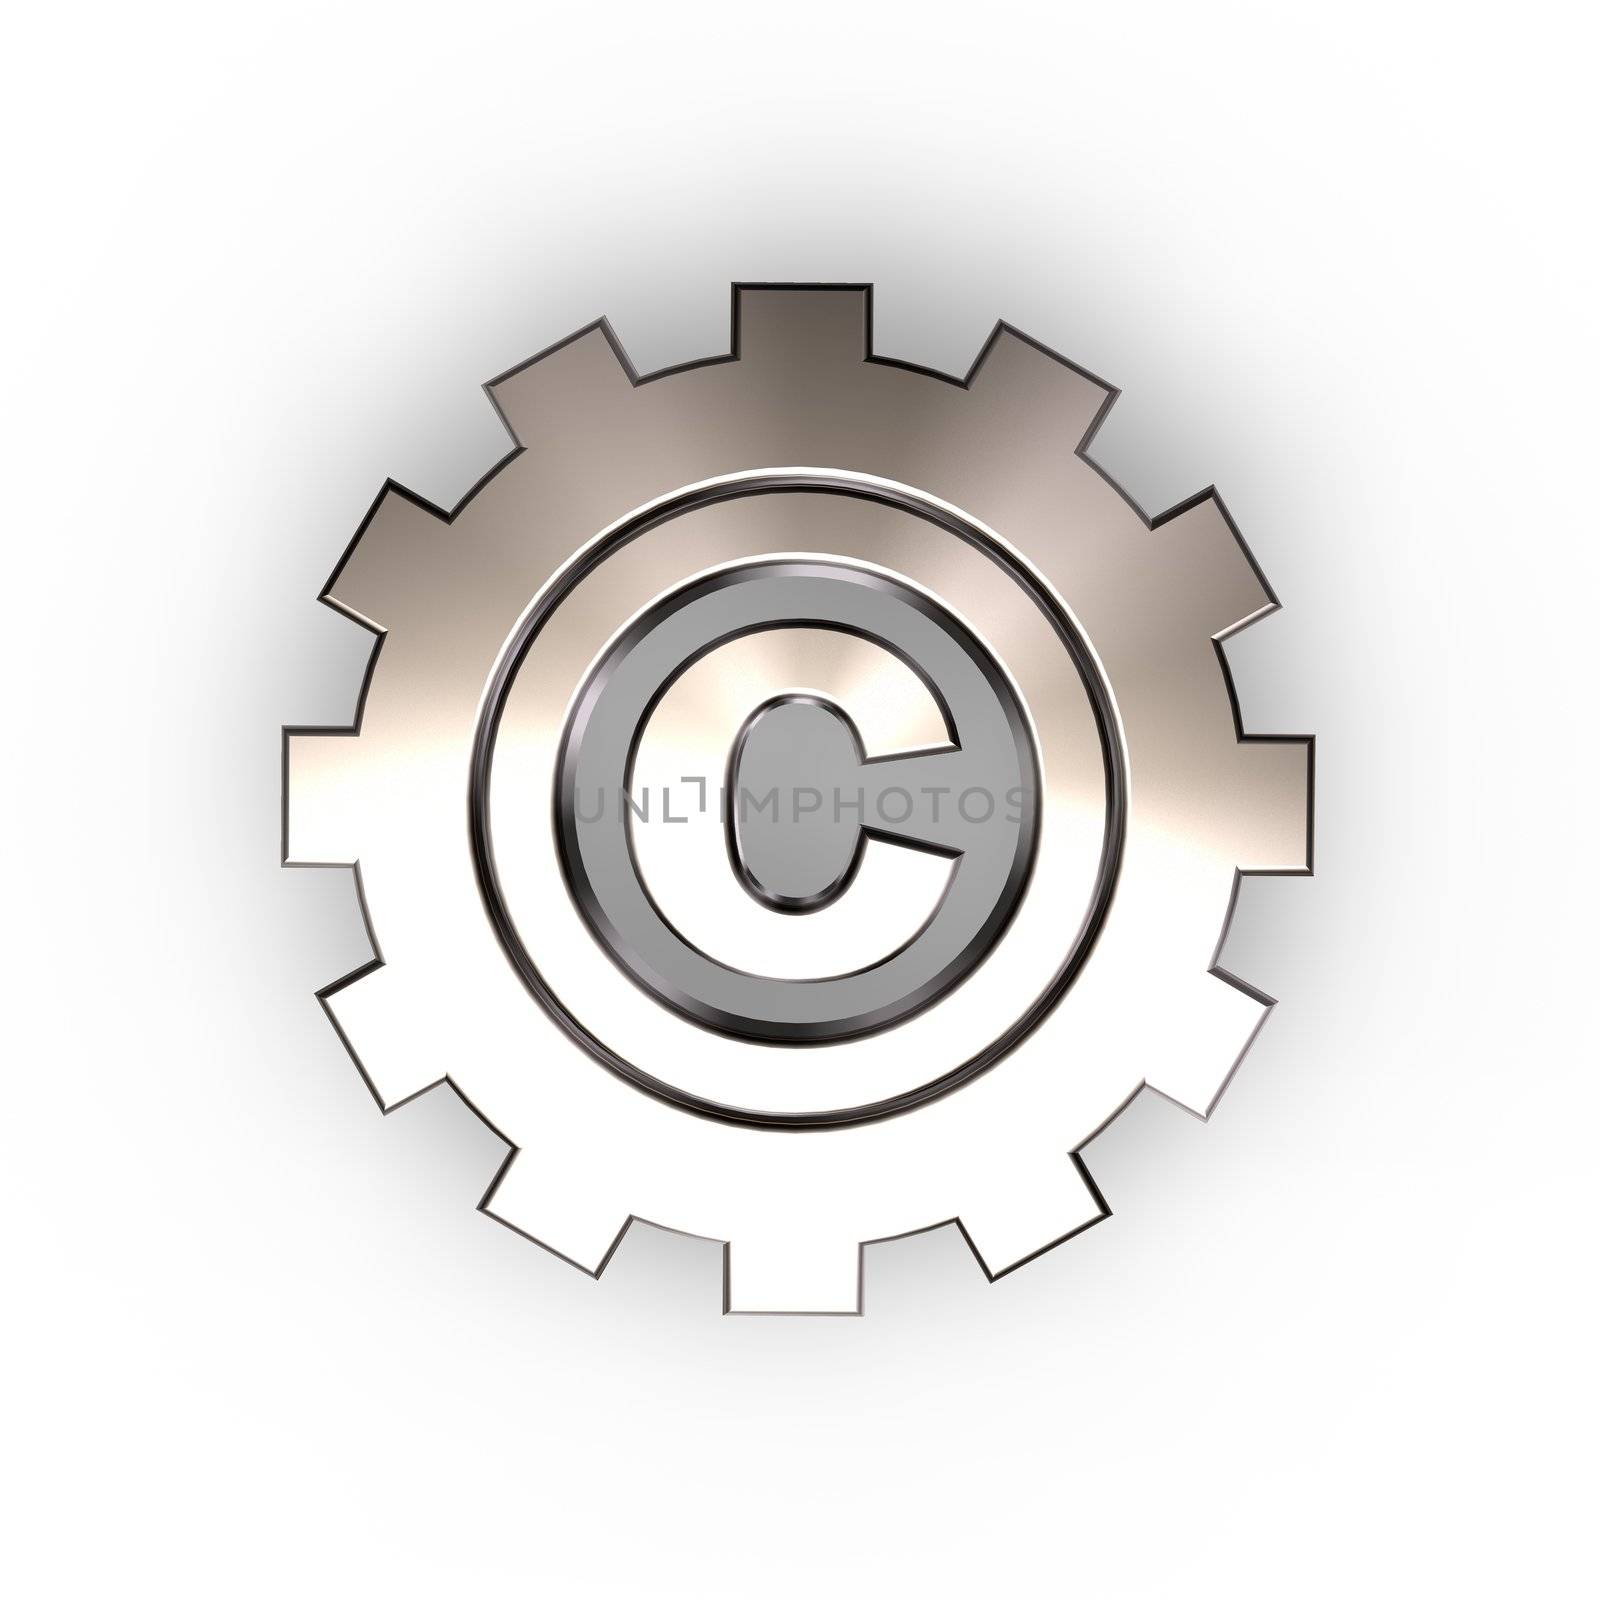 copyright symbol in gear wheel - 3d illustration